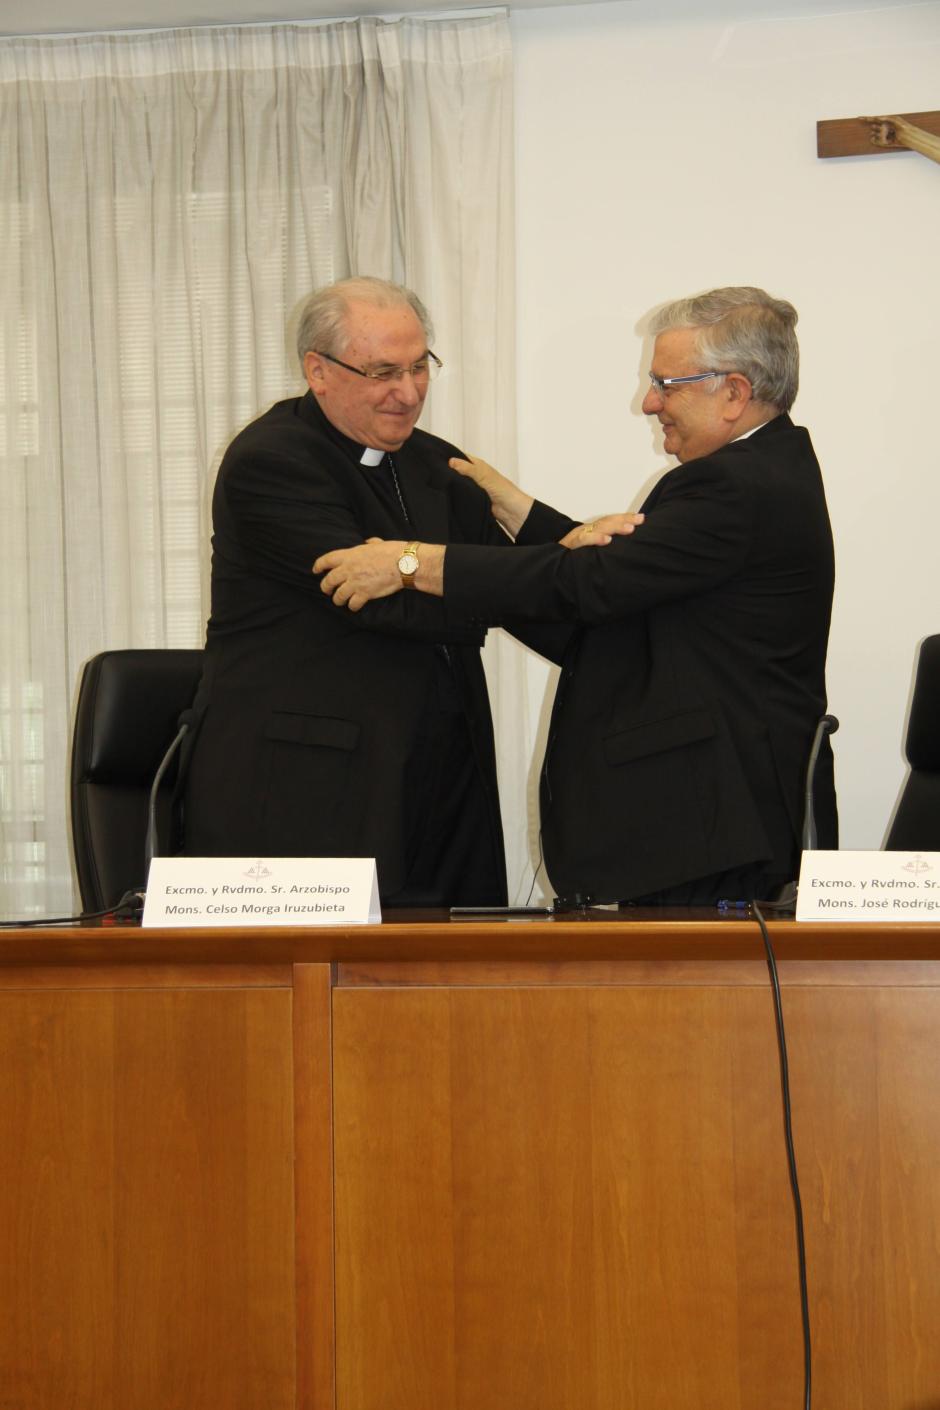 El abrazo entre el arzobispo emérito de Mérida-Badajoz, Celso Morga (i), y el nuevo arzobispo, José Rodríguez (d)